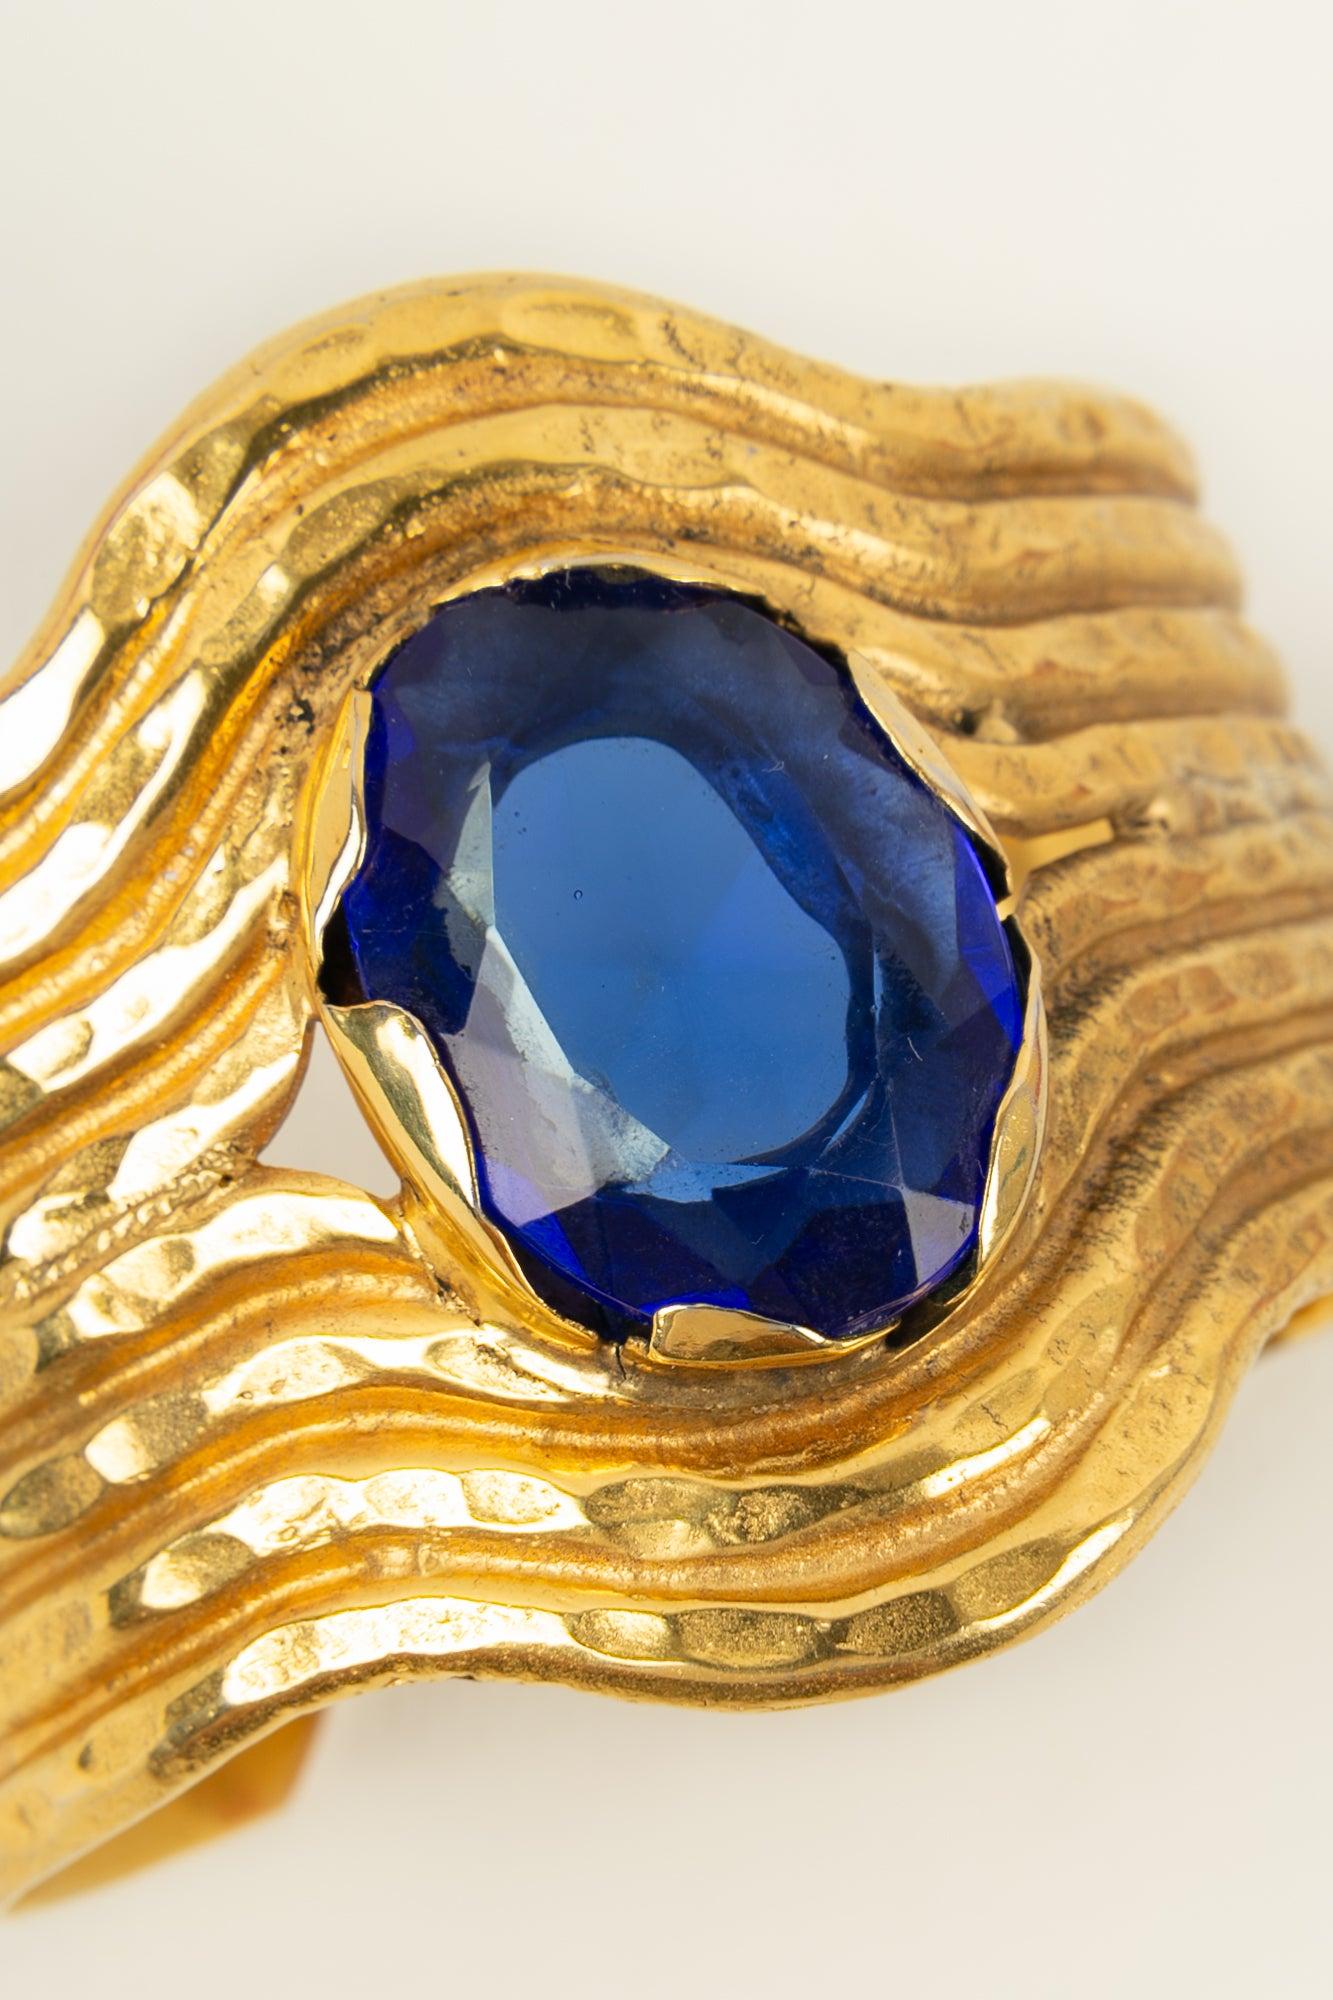 Gianfranco Ferré Cuff Bracelet in Golden Metal For Sale 2